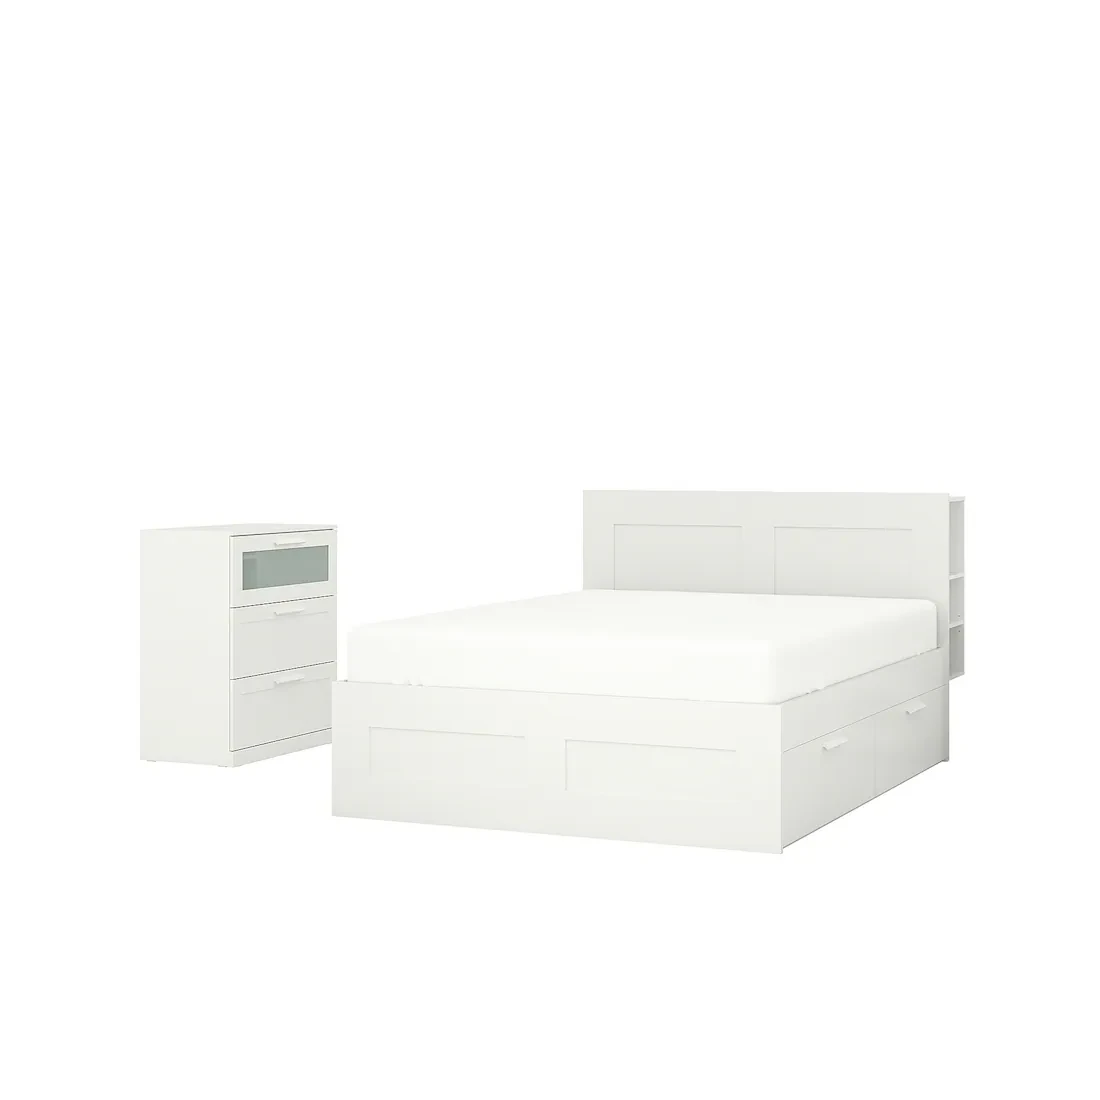 BRIMNES Меблі для спальні, комплект. 2 шт., білі, 180х200 см